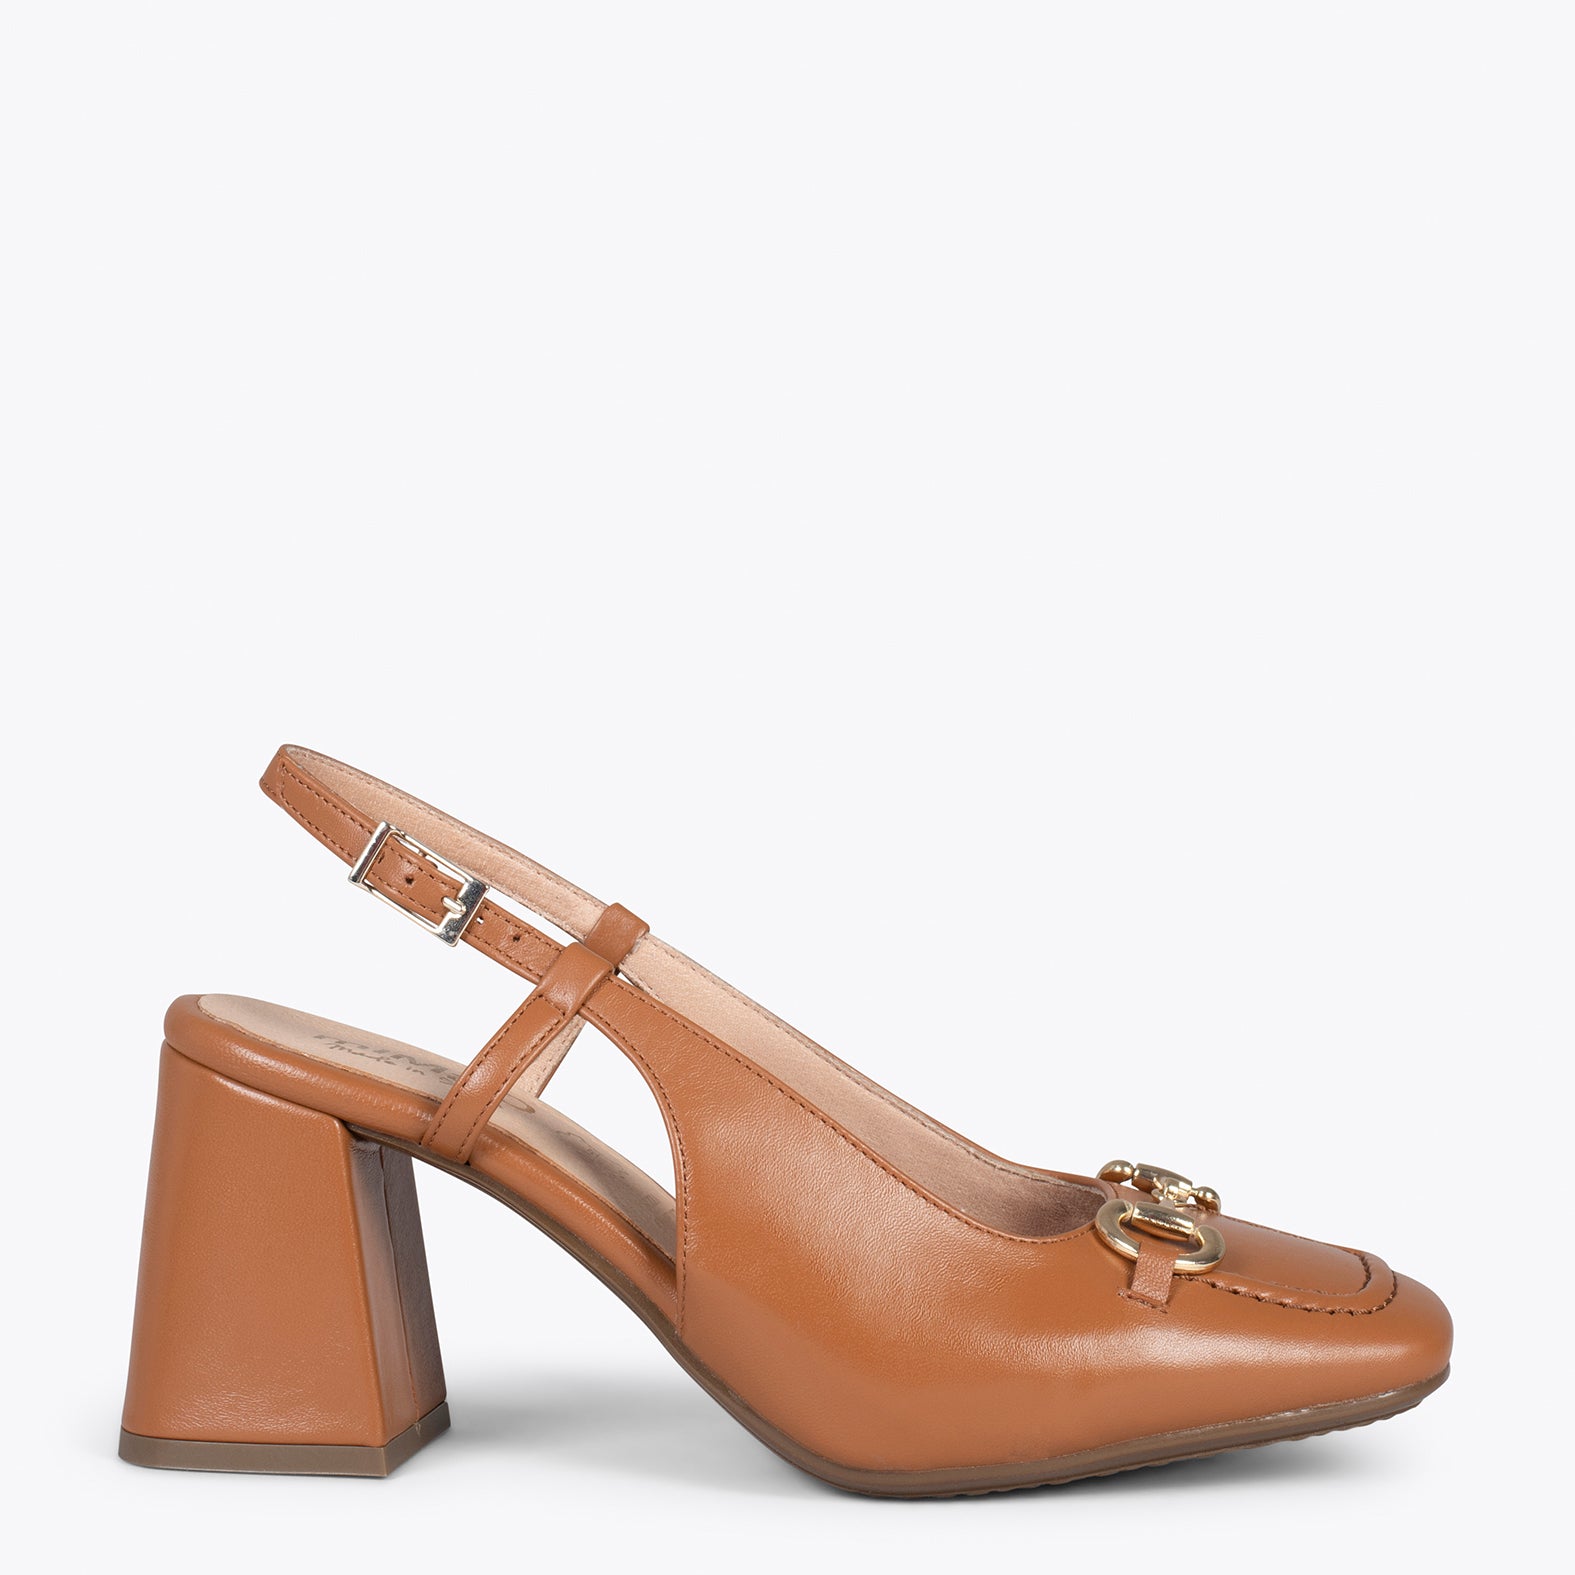 SLING-BACK MIA – CAMEL sling-back heeled moccasins